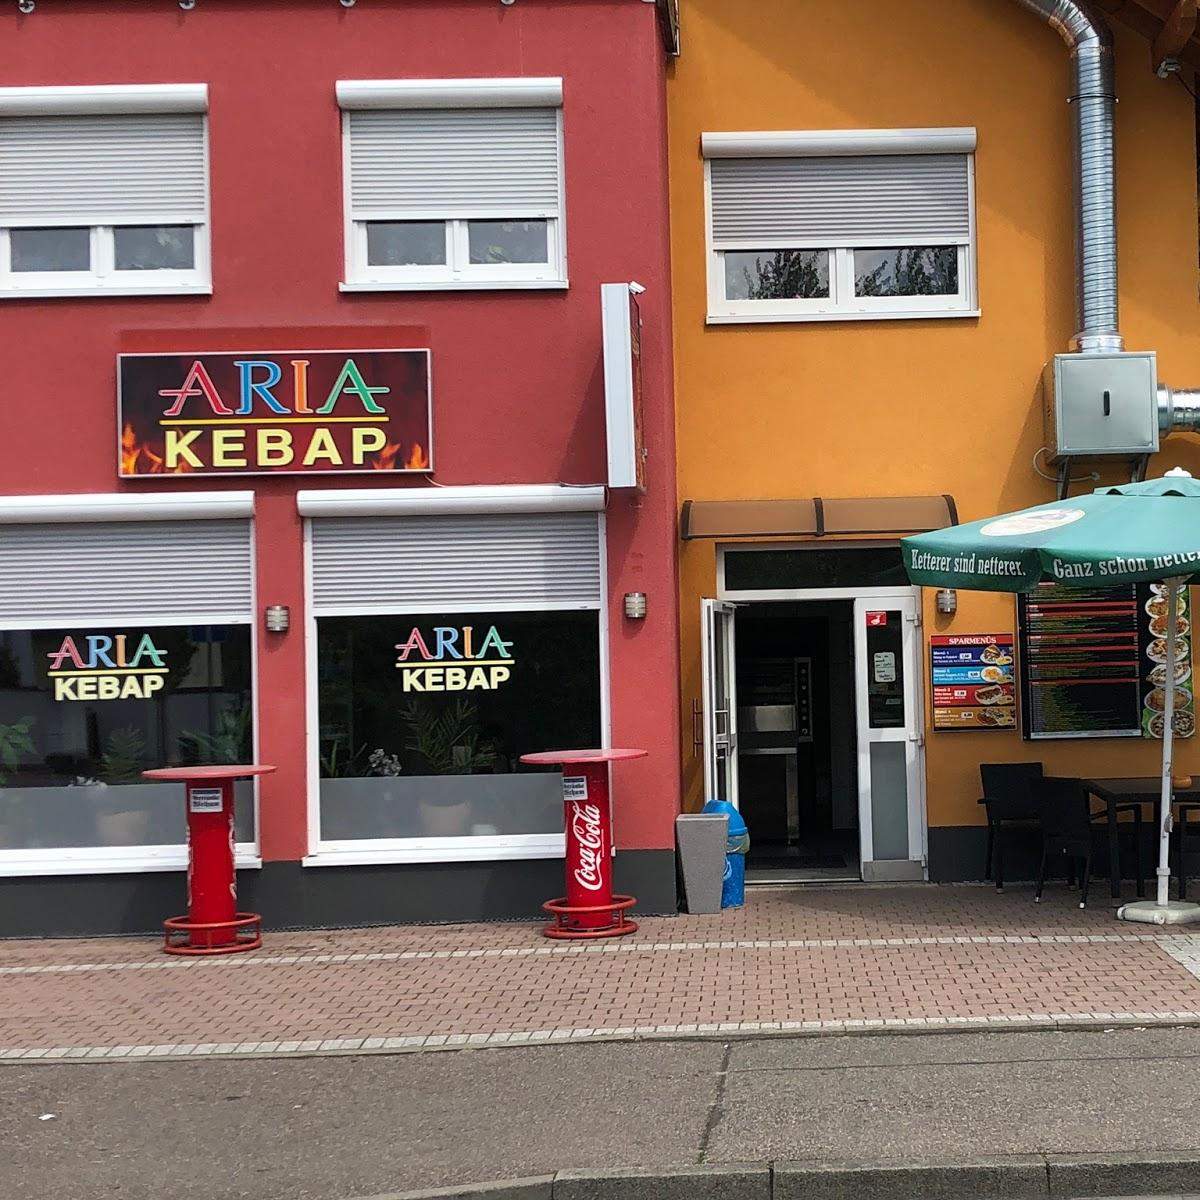 Restaurant "Aria kebap imbiss" in Breisach am Rhein